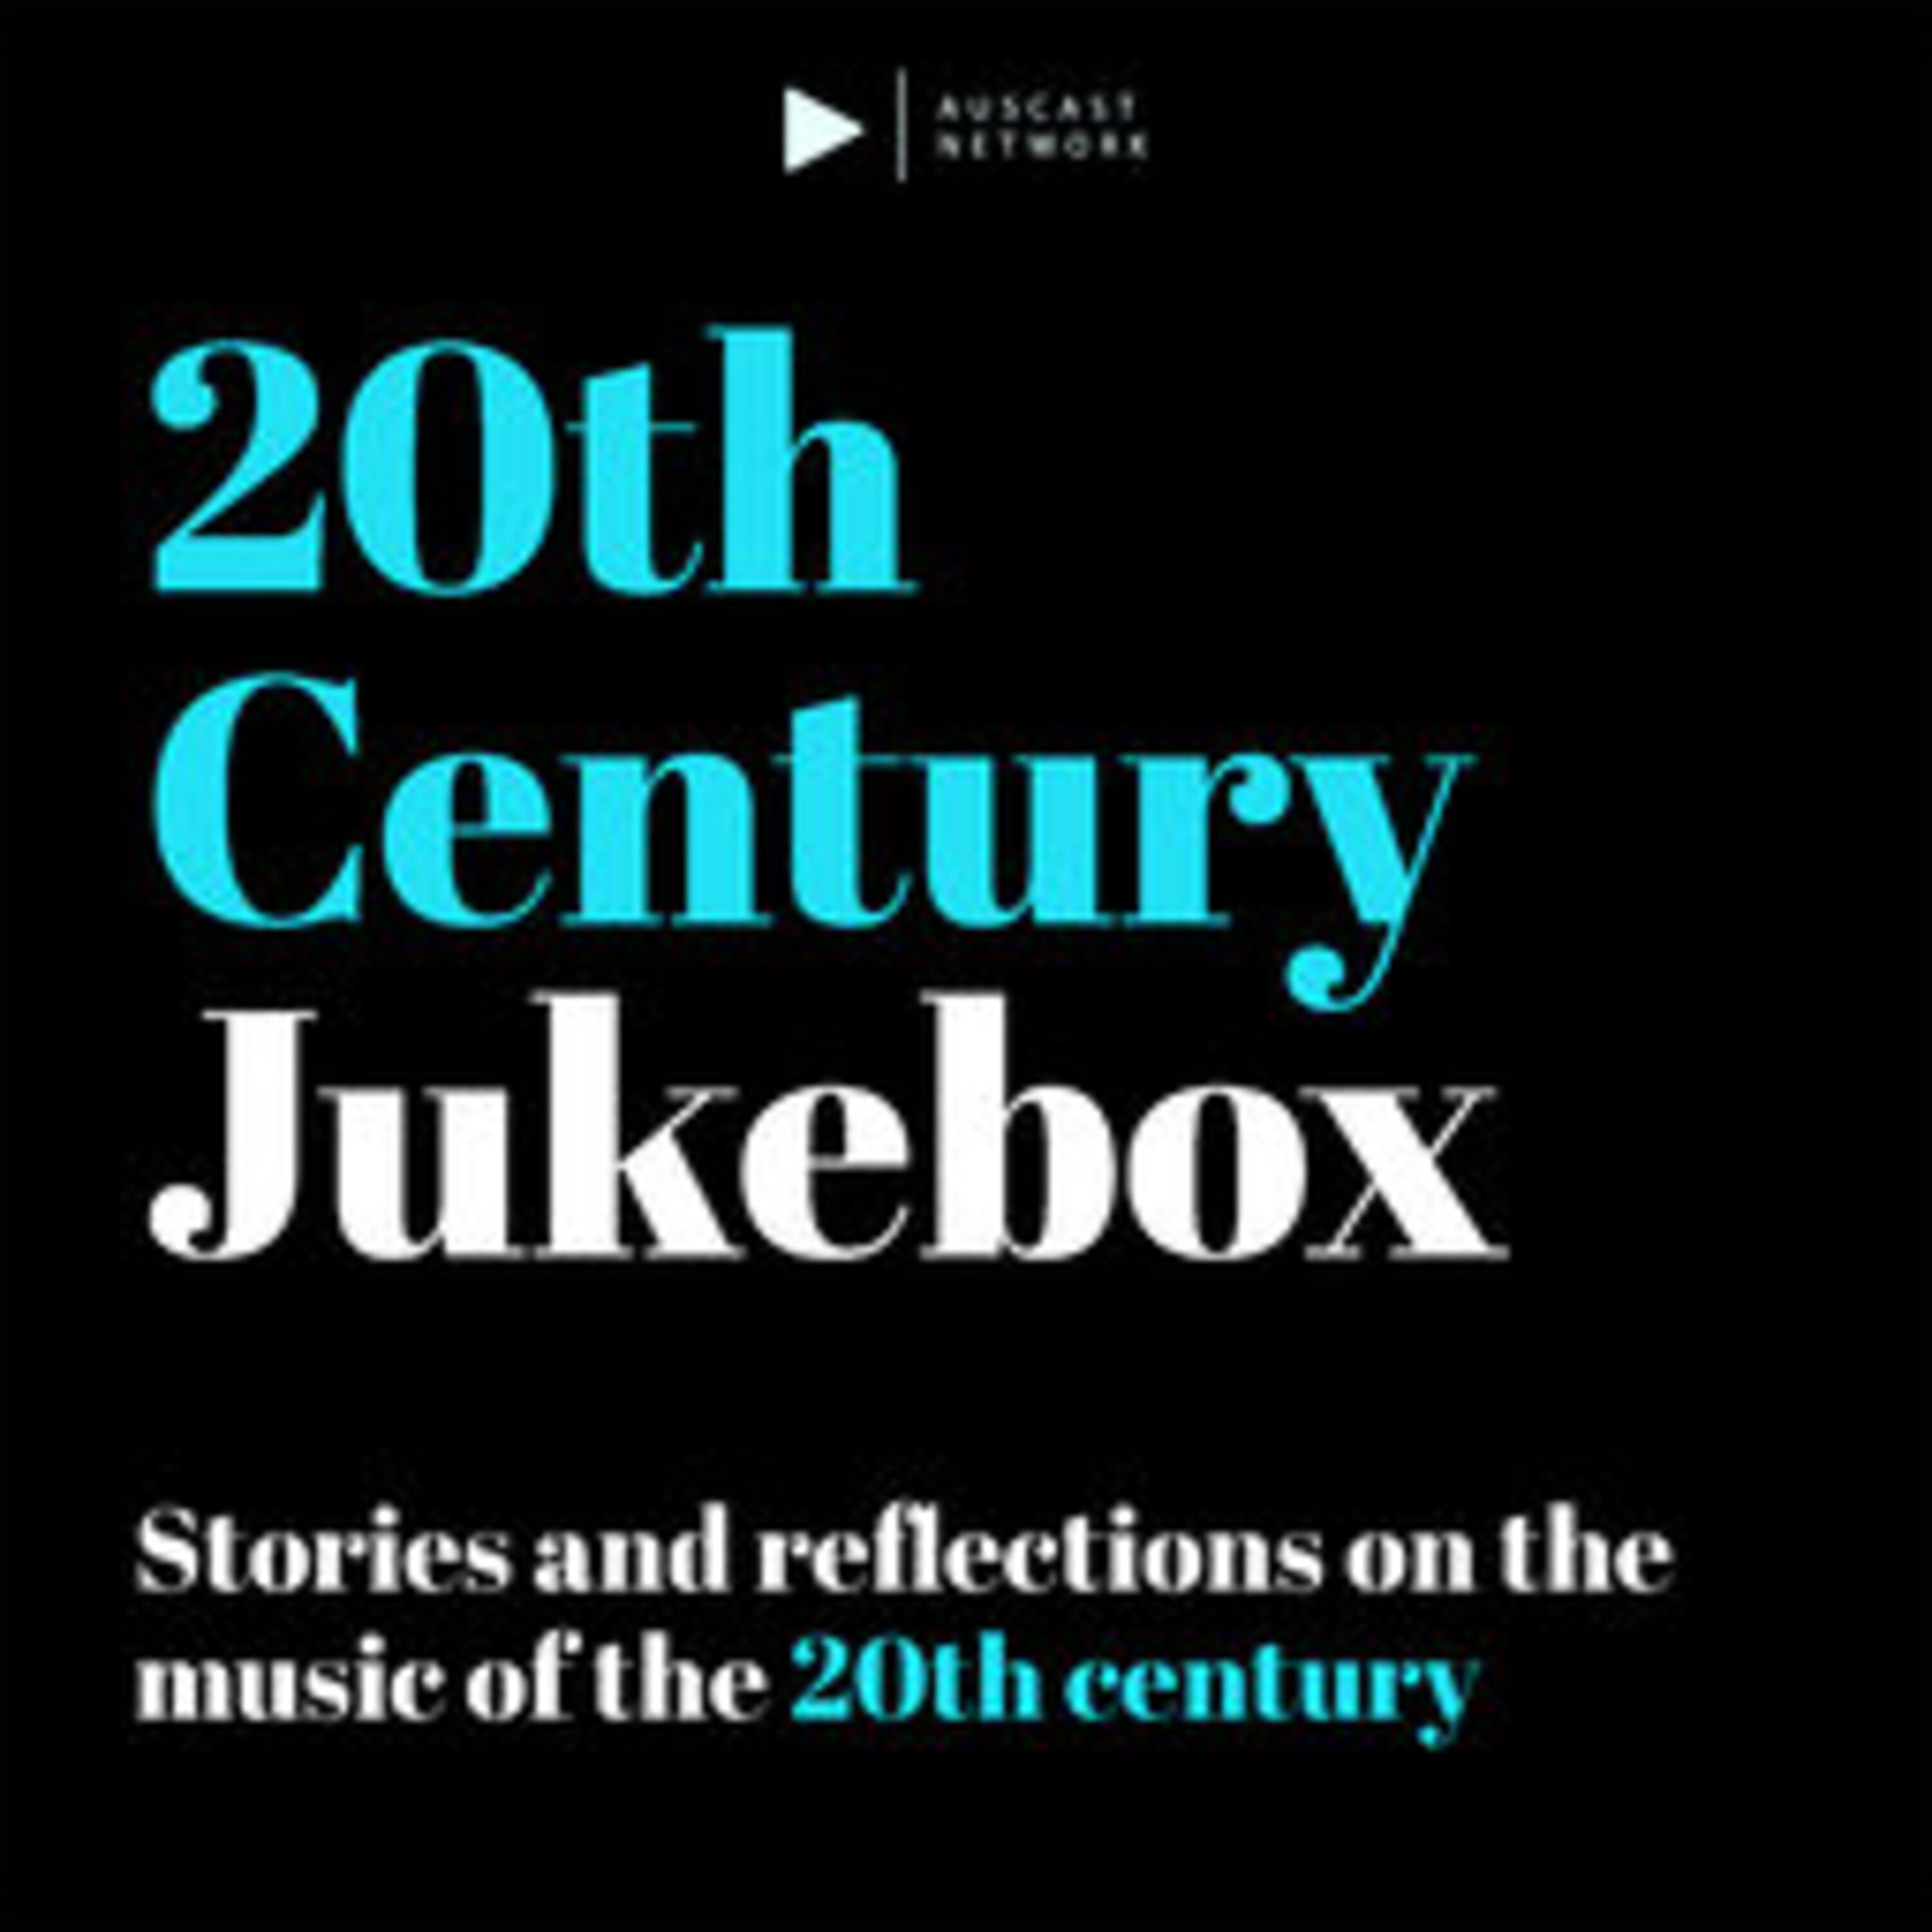 Artie Shaw - 20th Century Jukebox